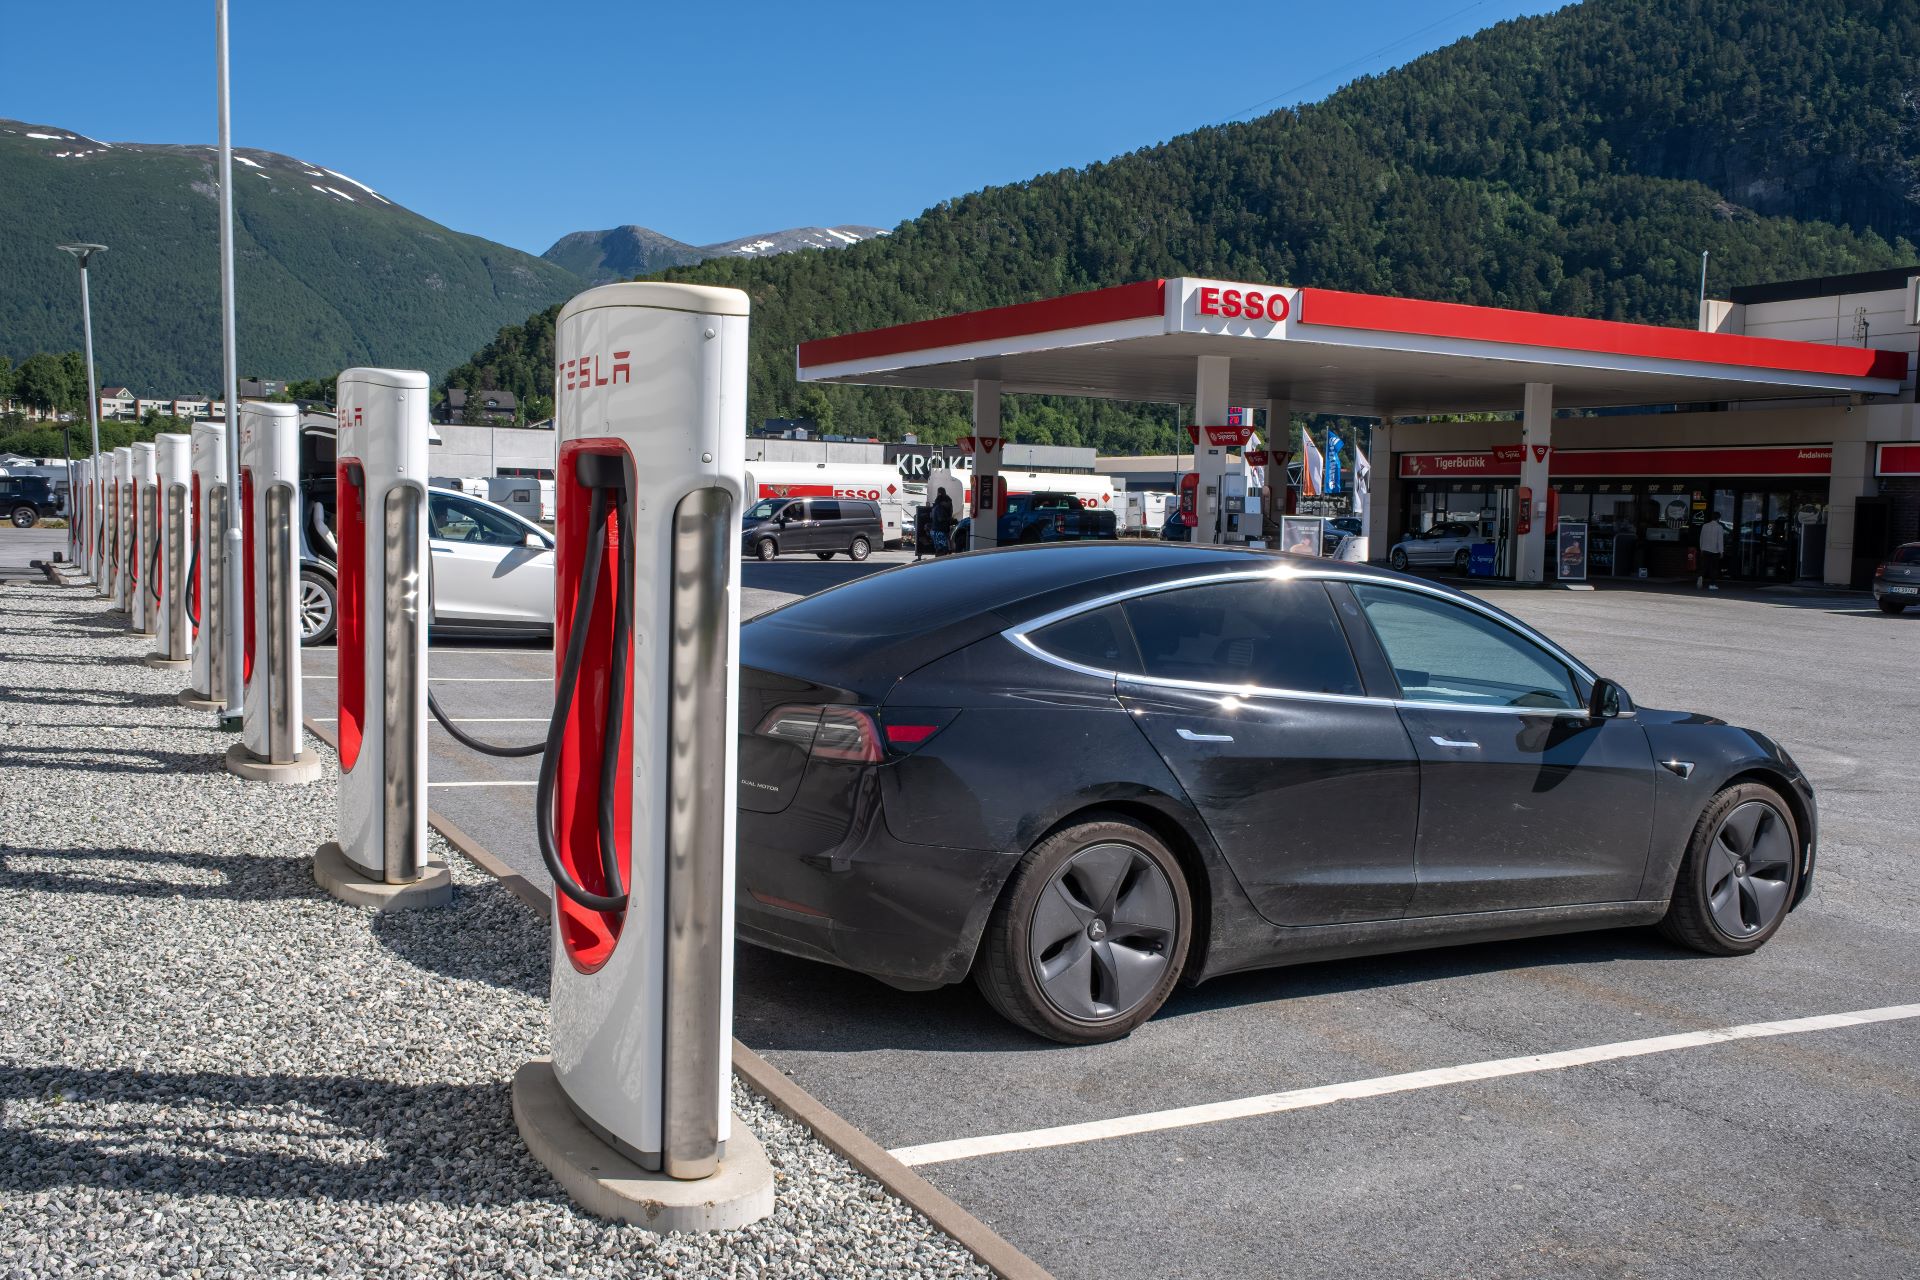 Tesla Supercharger V2 & V3 - A1 Erftstadt : charging station in Erftstadt,  Germany